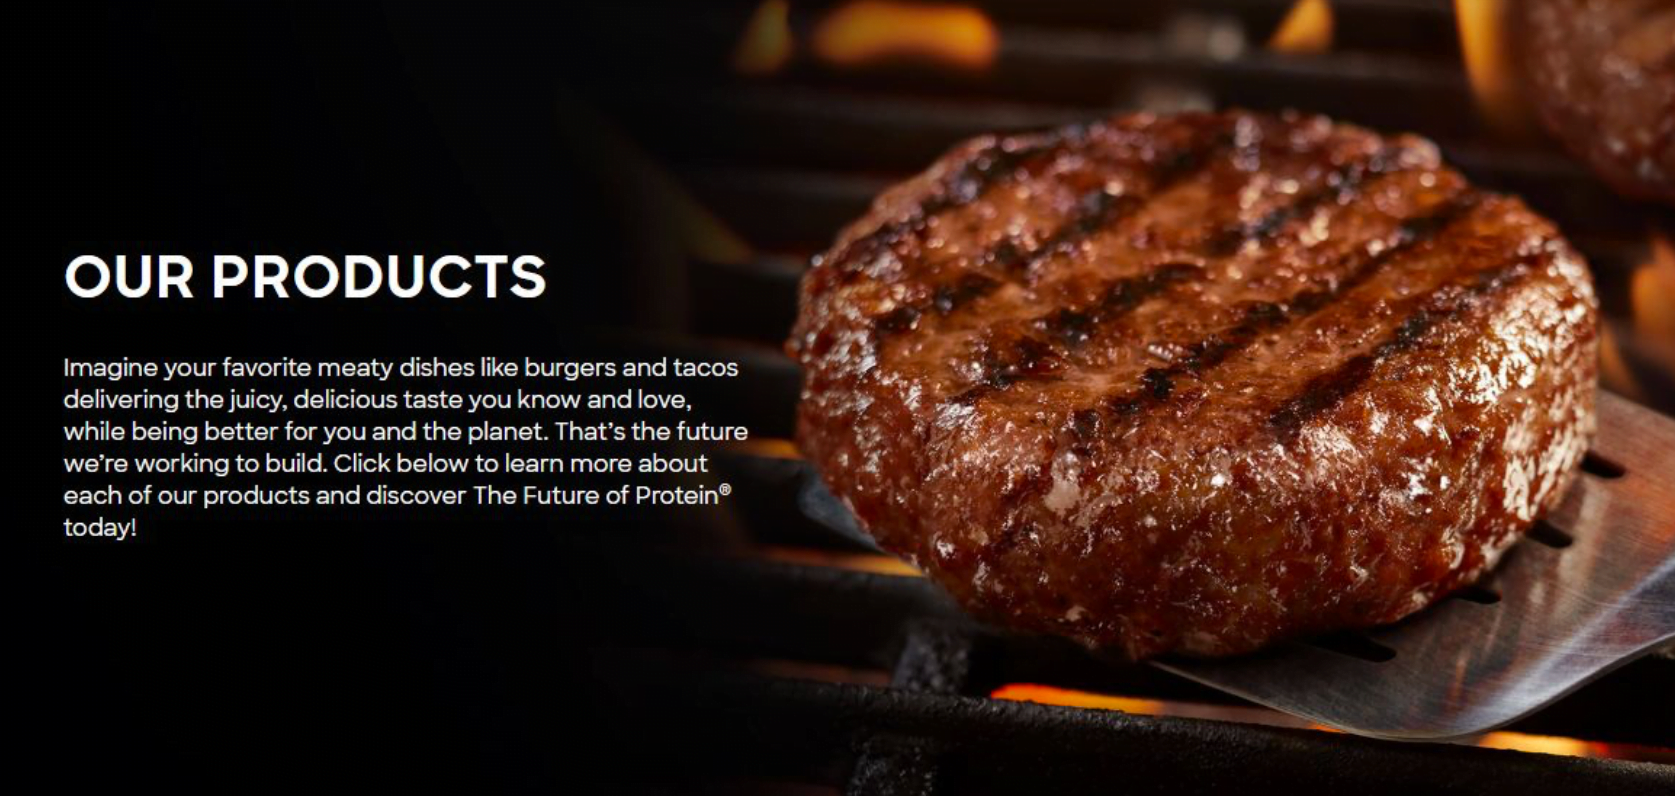 La diapositiva de presentación de relaciones con los inversores de Beyond Meat destaca que sus hamburguesas son "mejores para ti y para el planeta".